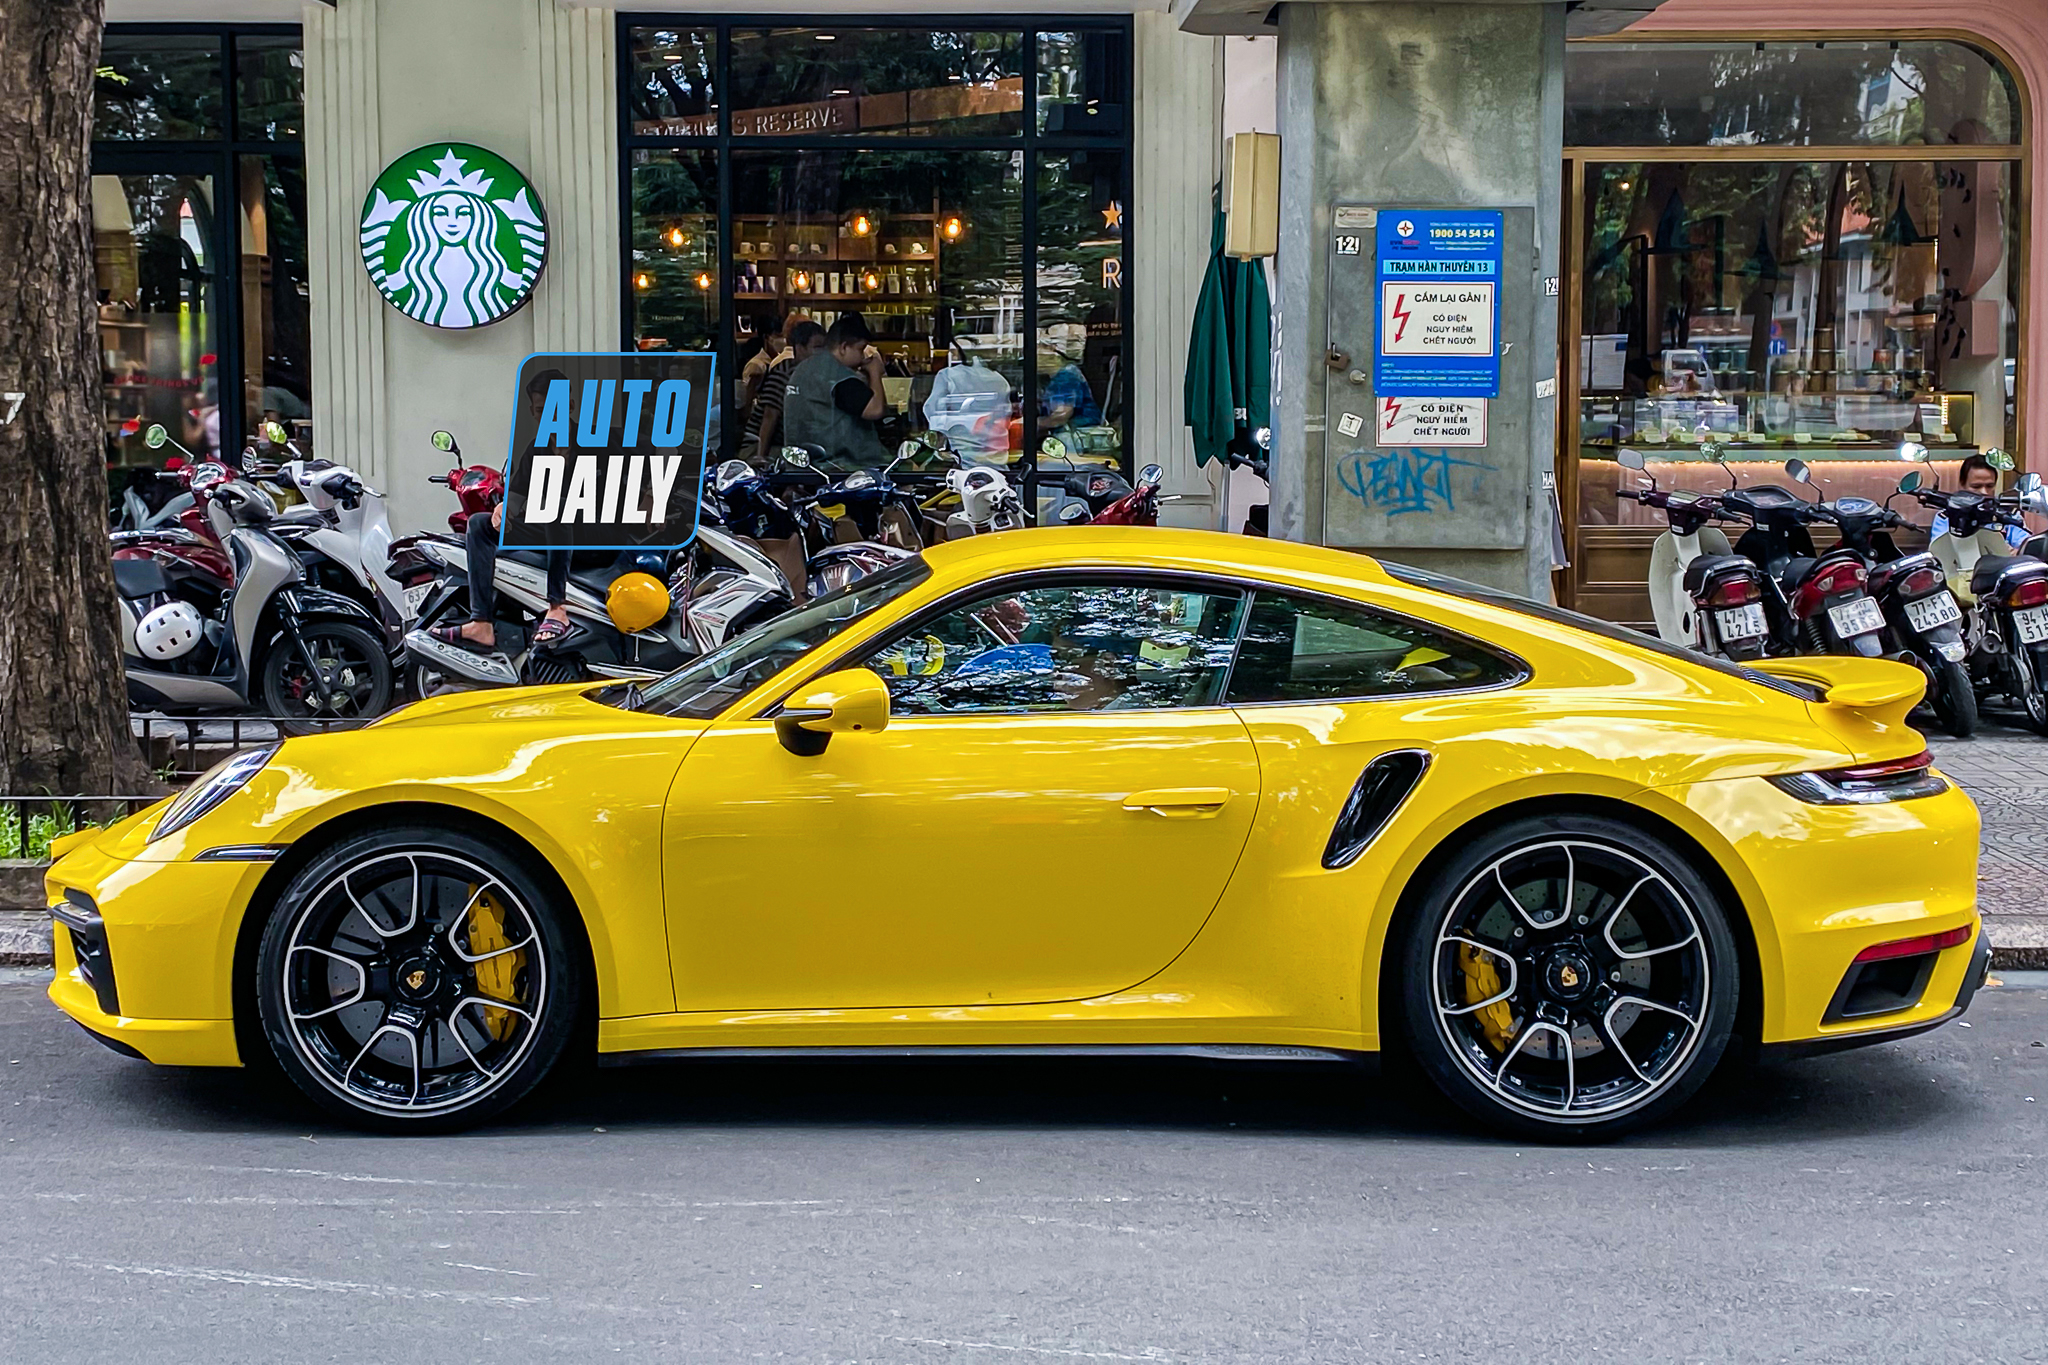 Bắt gặp Porsche 911 Turbo S hơn 17 tỷ màu vàng độc nhất Việt Nam của đại gia Sài Gòn porsche-911-turbo-s-mau-vang-autodaily-6.JPG